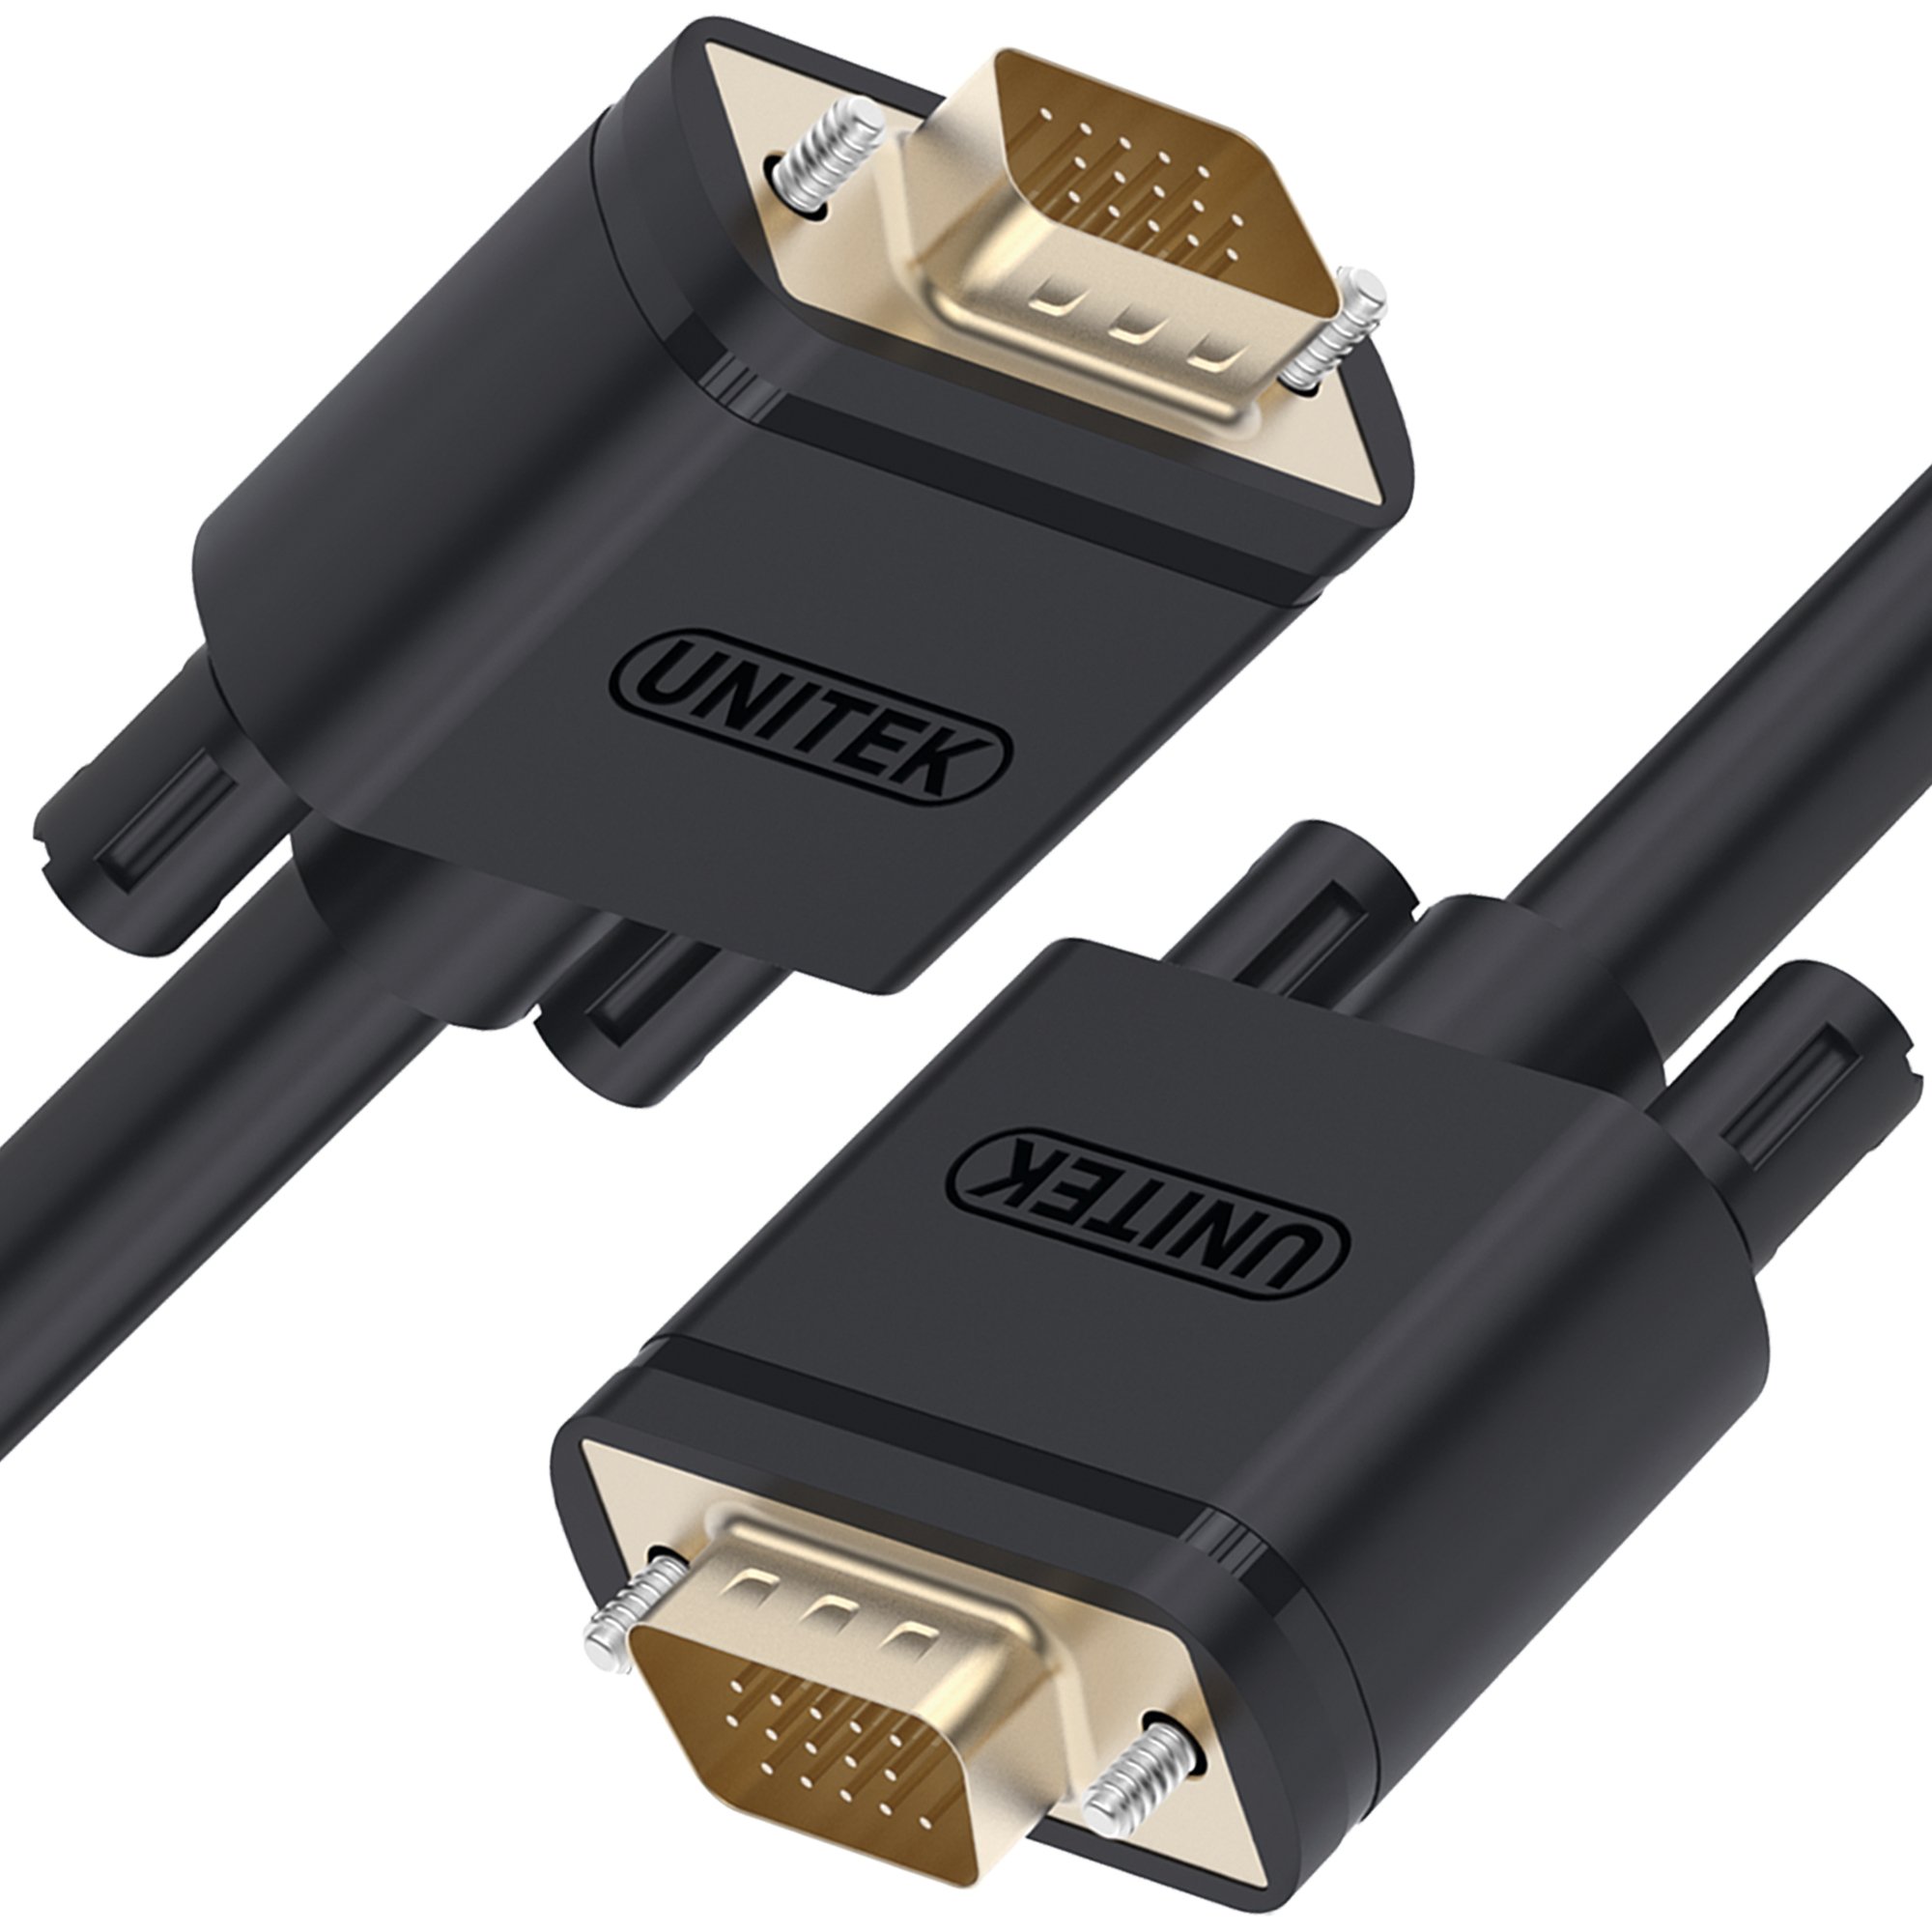 Cablu Unitek, Sub-D (VGA) - Sub-D (VGA), Negru